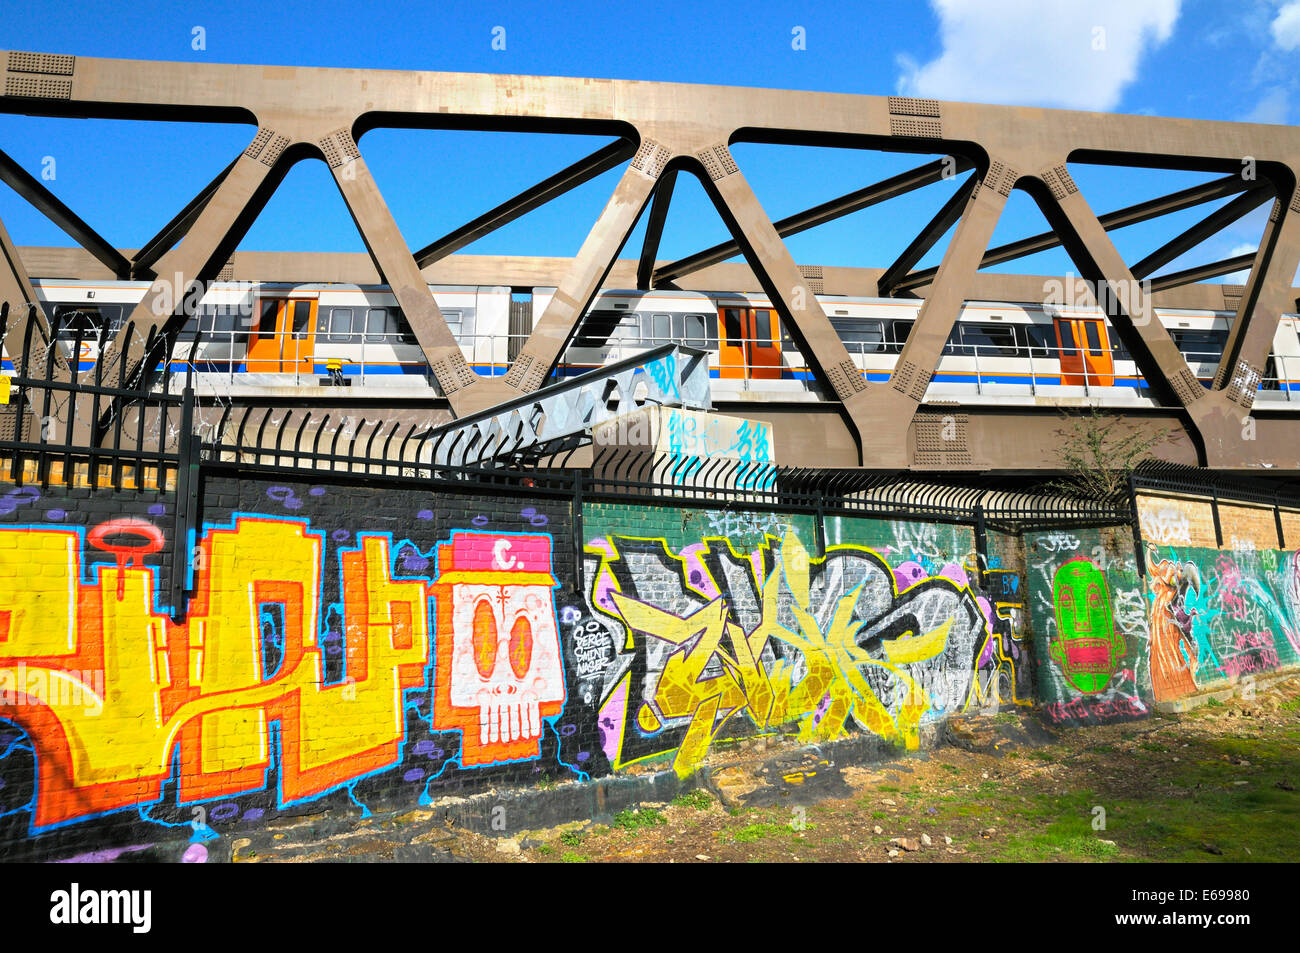 Le Graffiti sous un pont de chemin de fer, East London, UK Banque D'Images